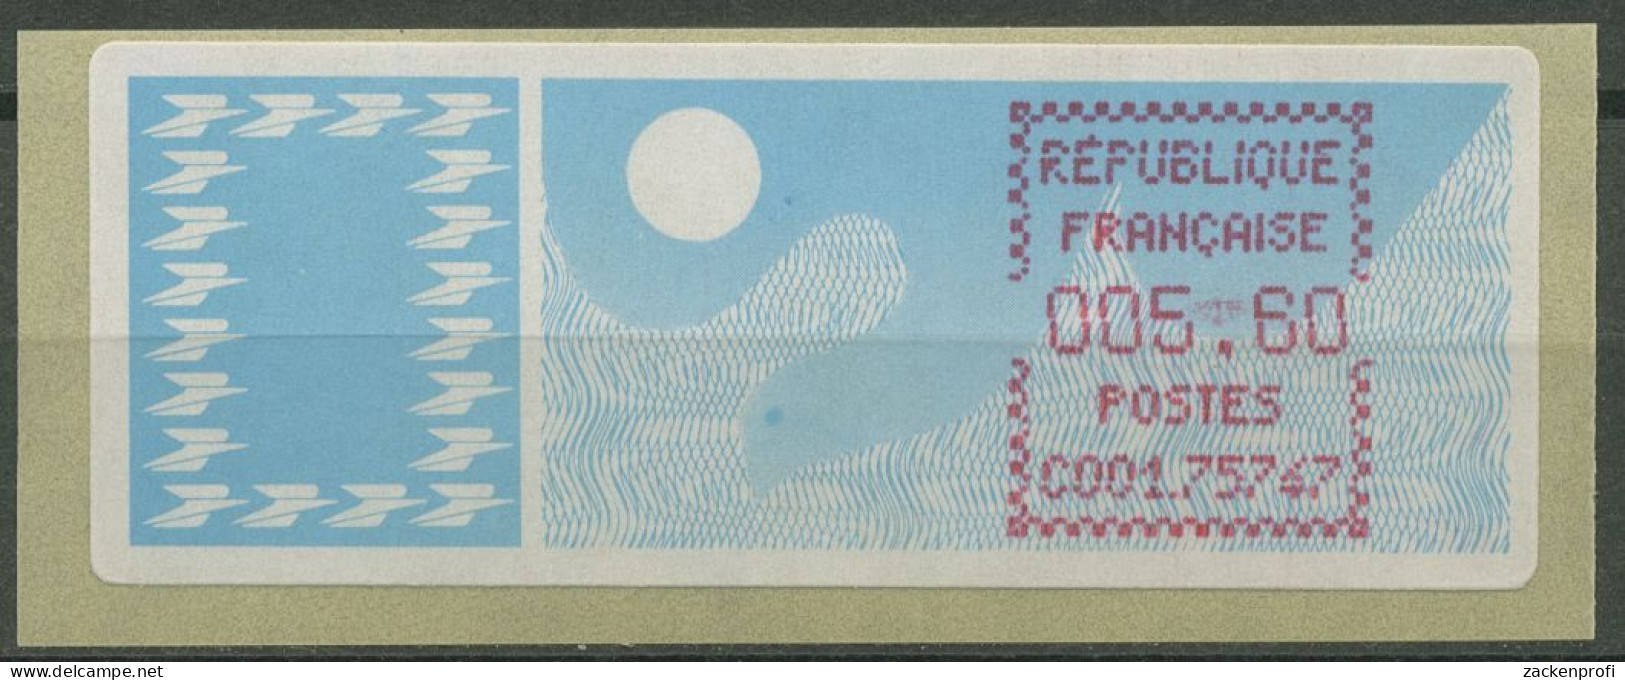 Frankreich ATM 1985 Taube Einzelwert ATM 6.15 Zd Postfrisch - 1985 Papier « Carrier »